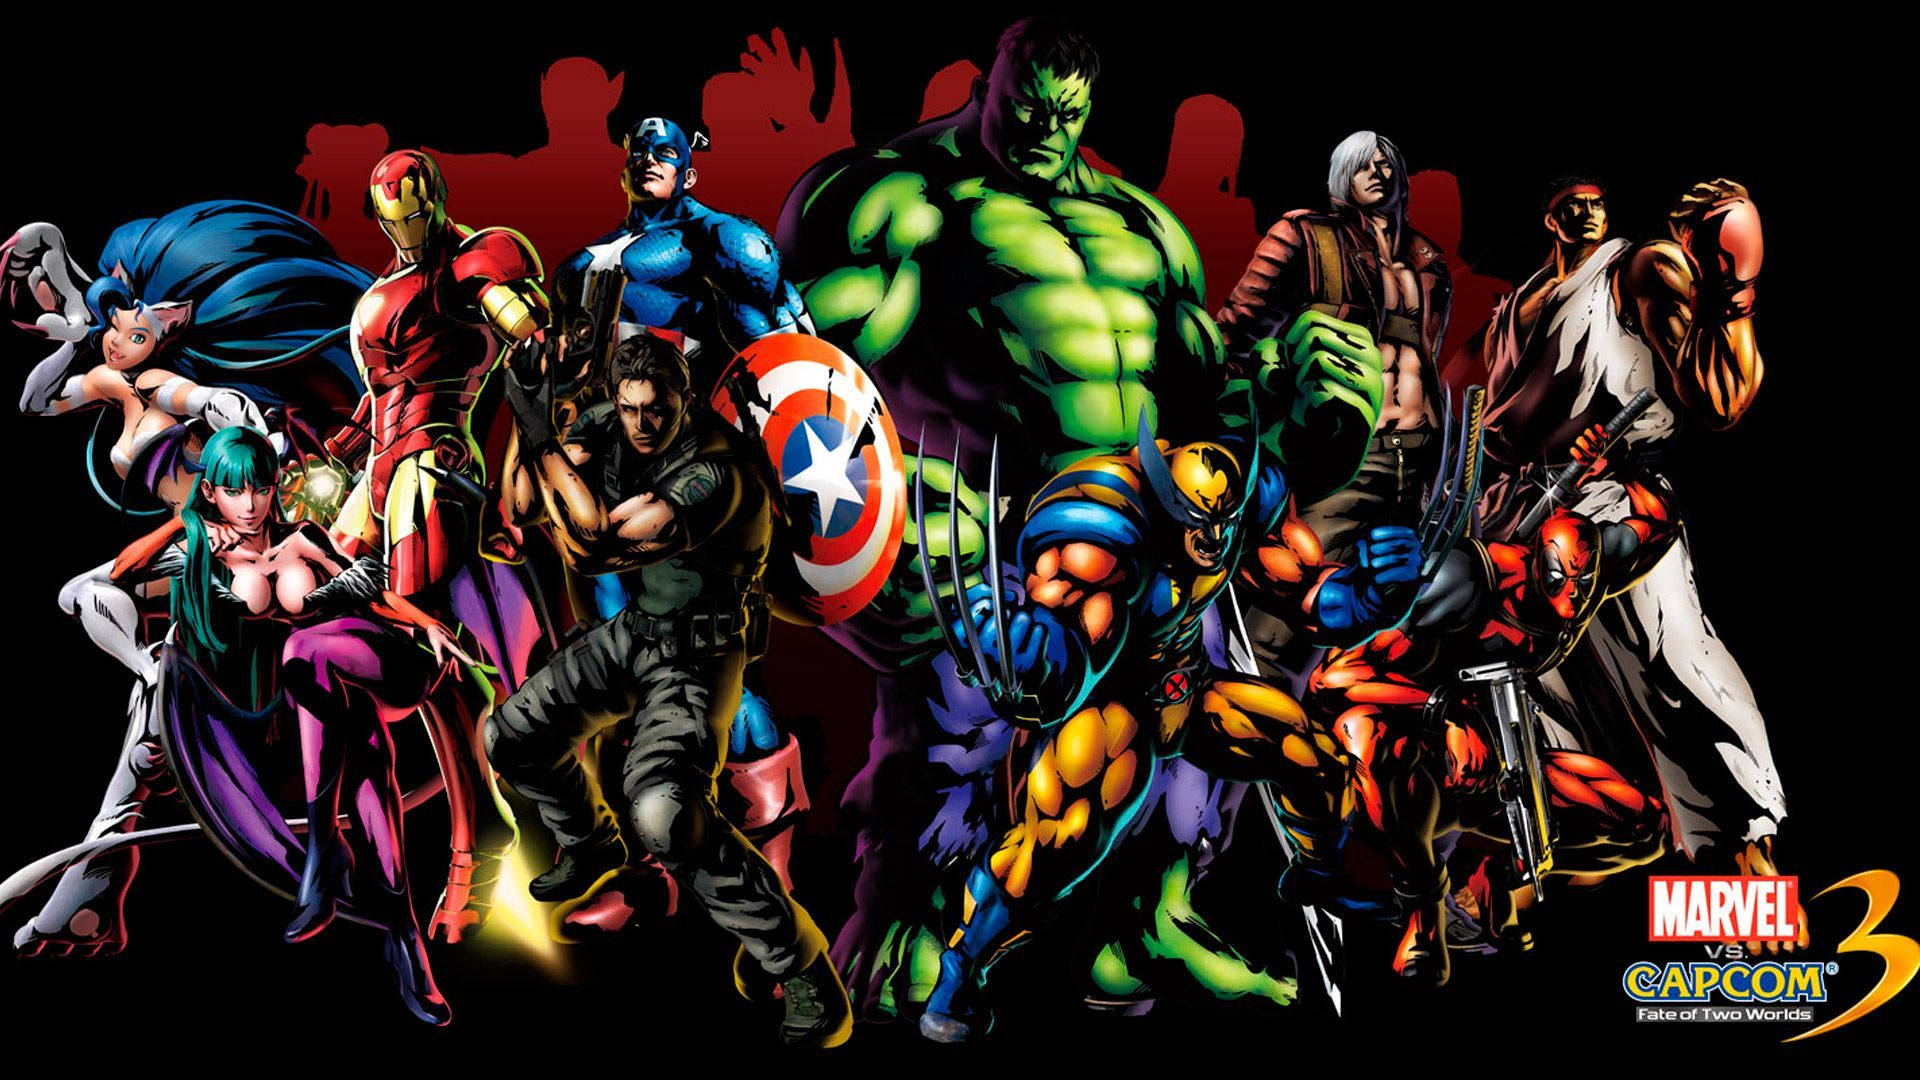 Download Superhero Marvel And Capcom Wallpaper 